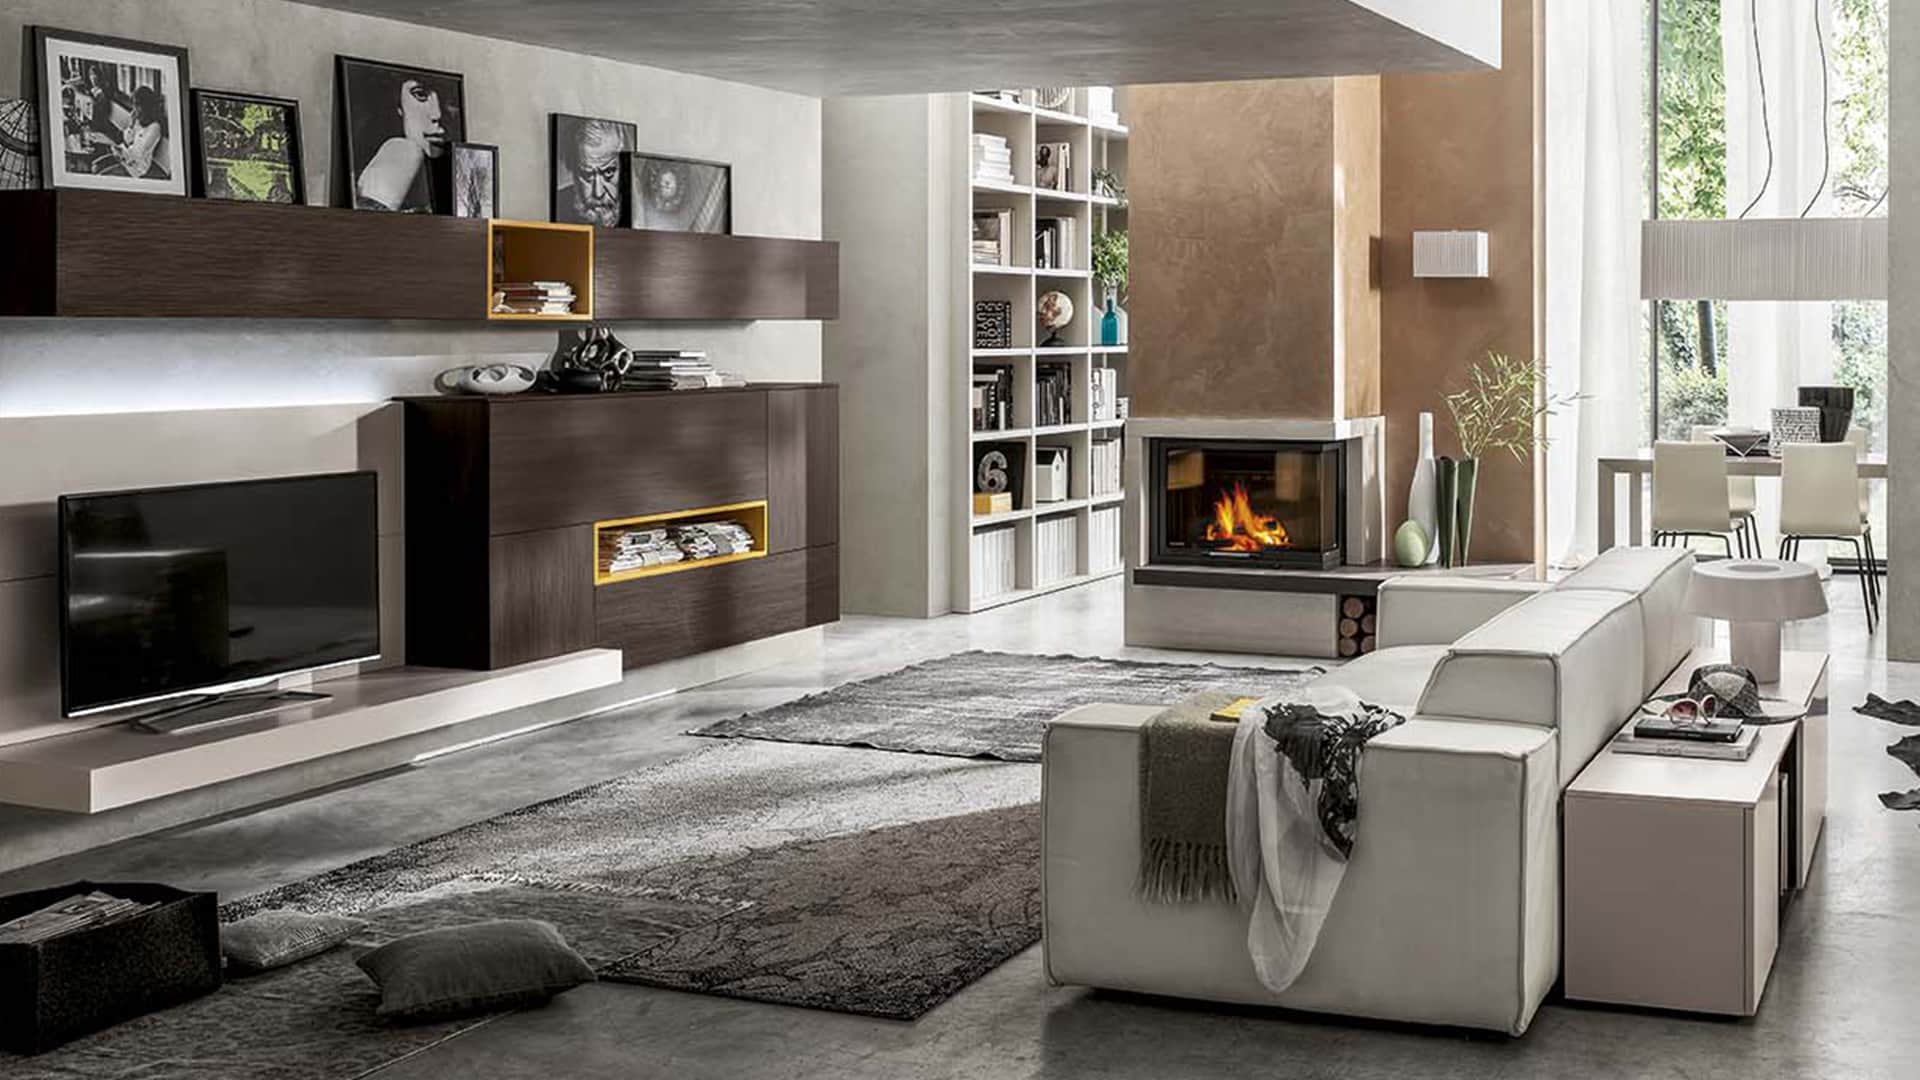 Vendita di mobili per soggiorno a padova mobili da for Arredamenti soggiorno moderni